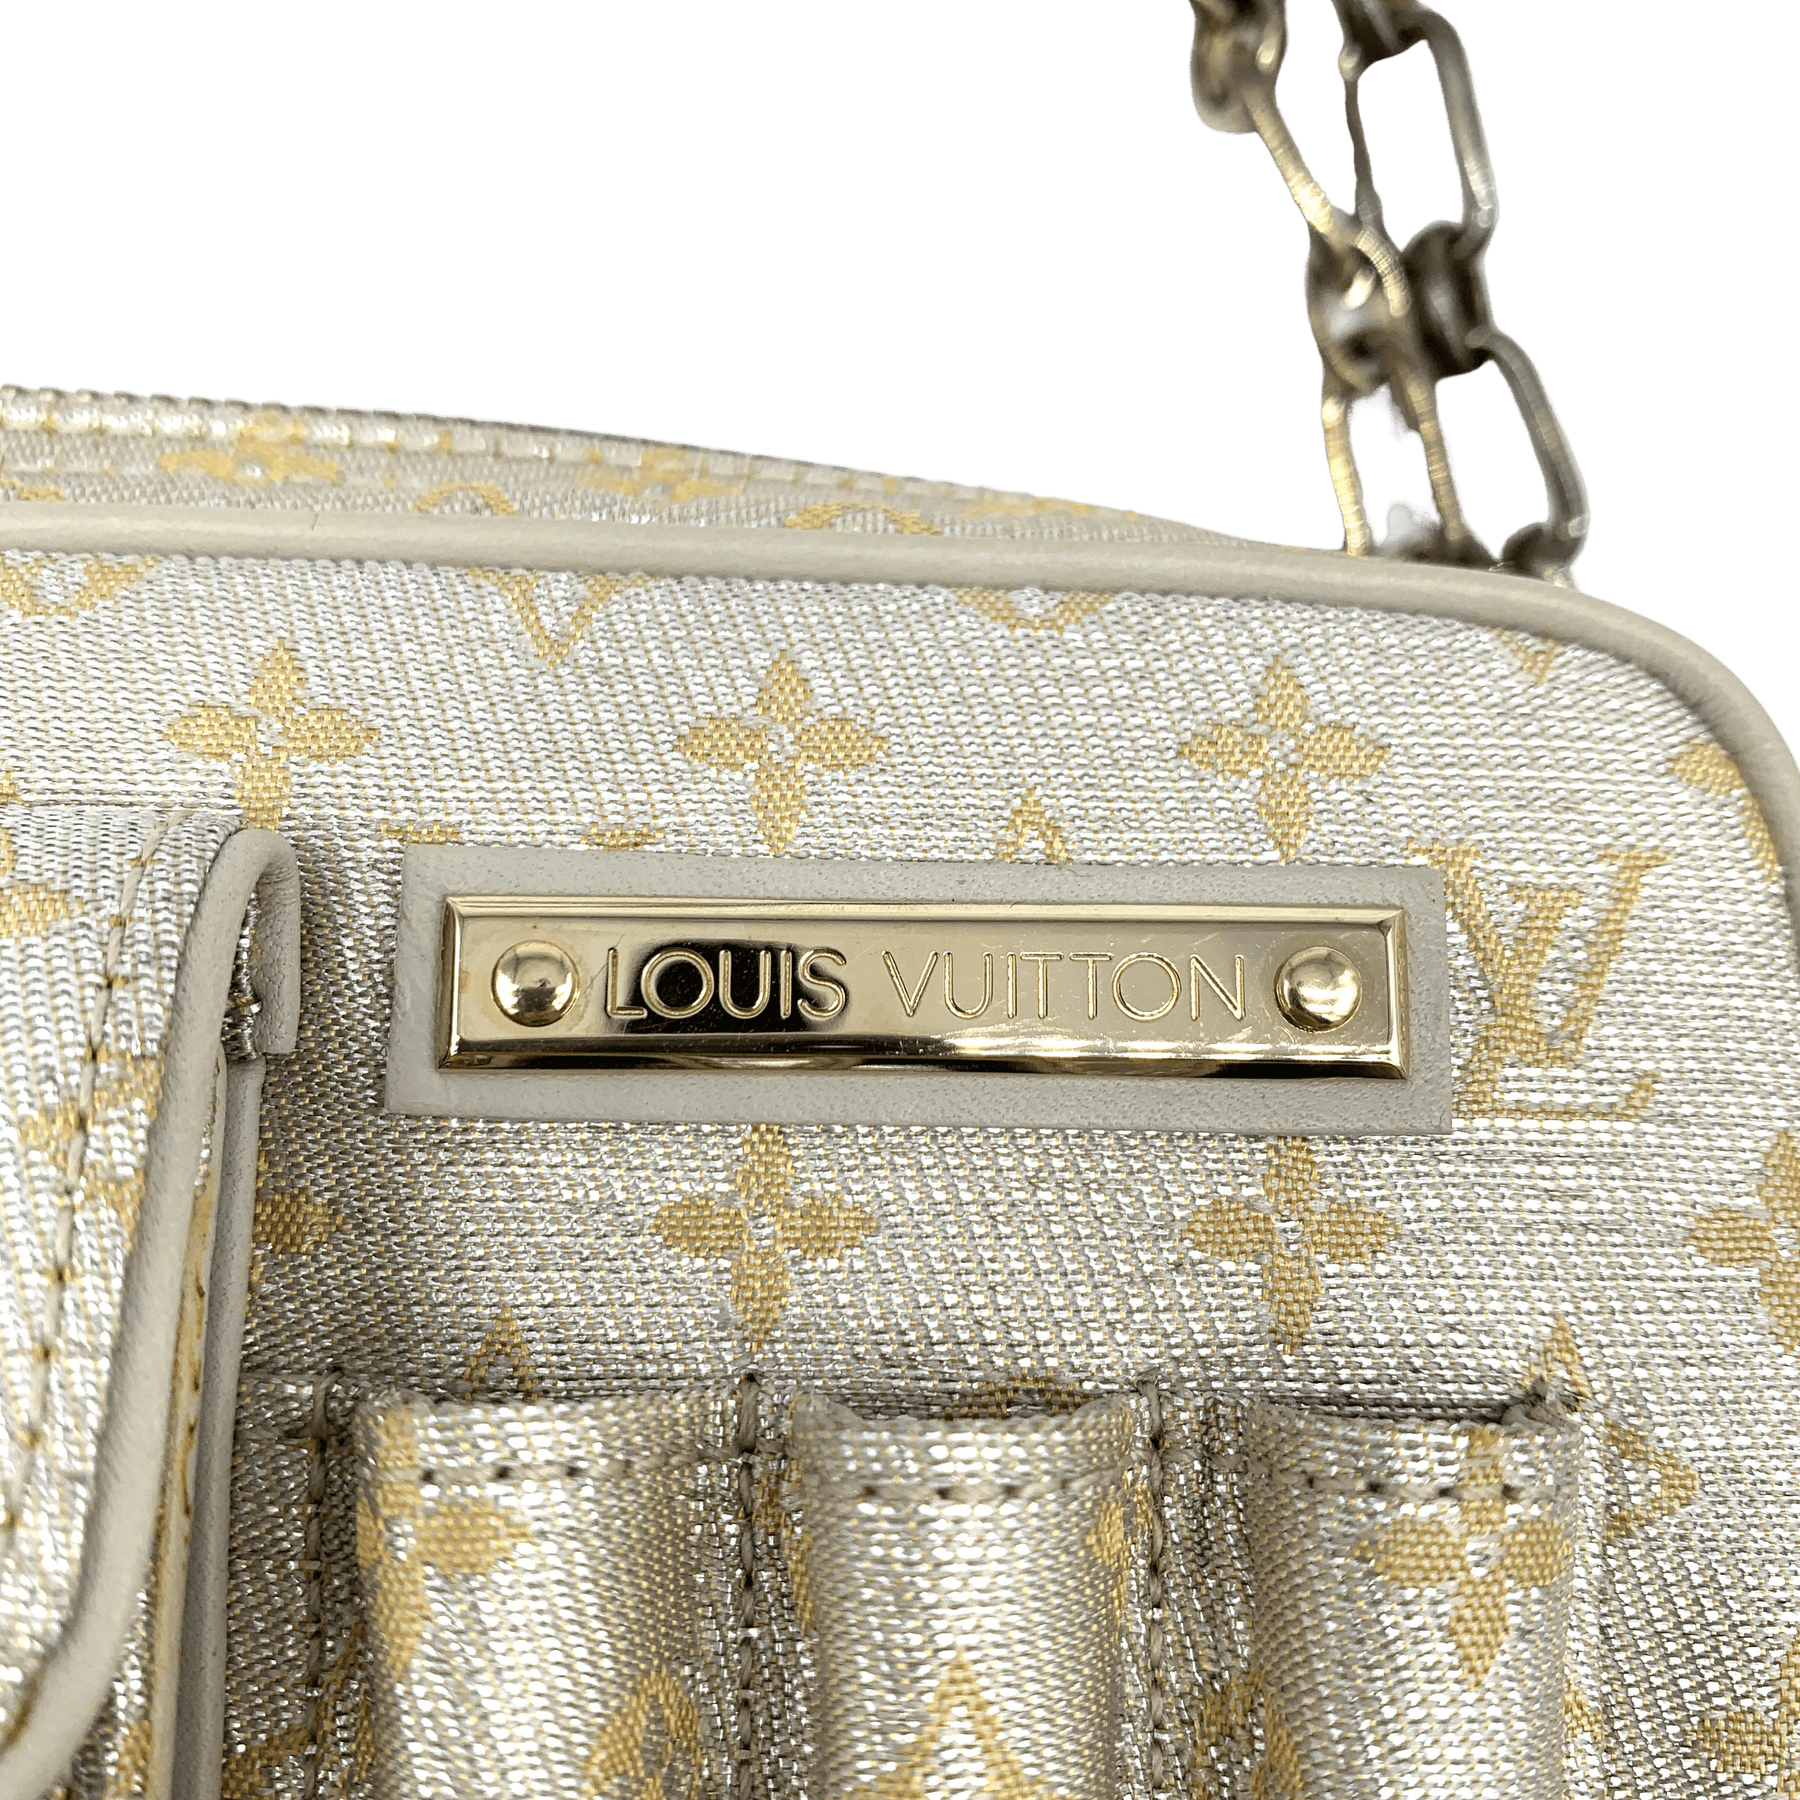 Vintage Louis Vuitton Fanny Pack – Clothes Heaven Since 1983